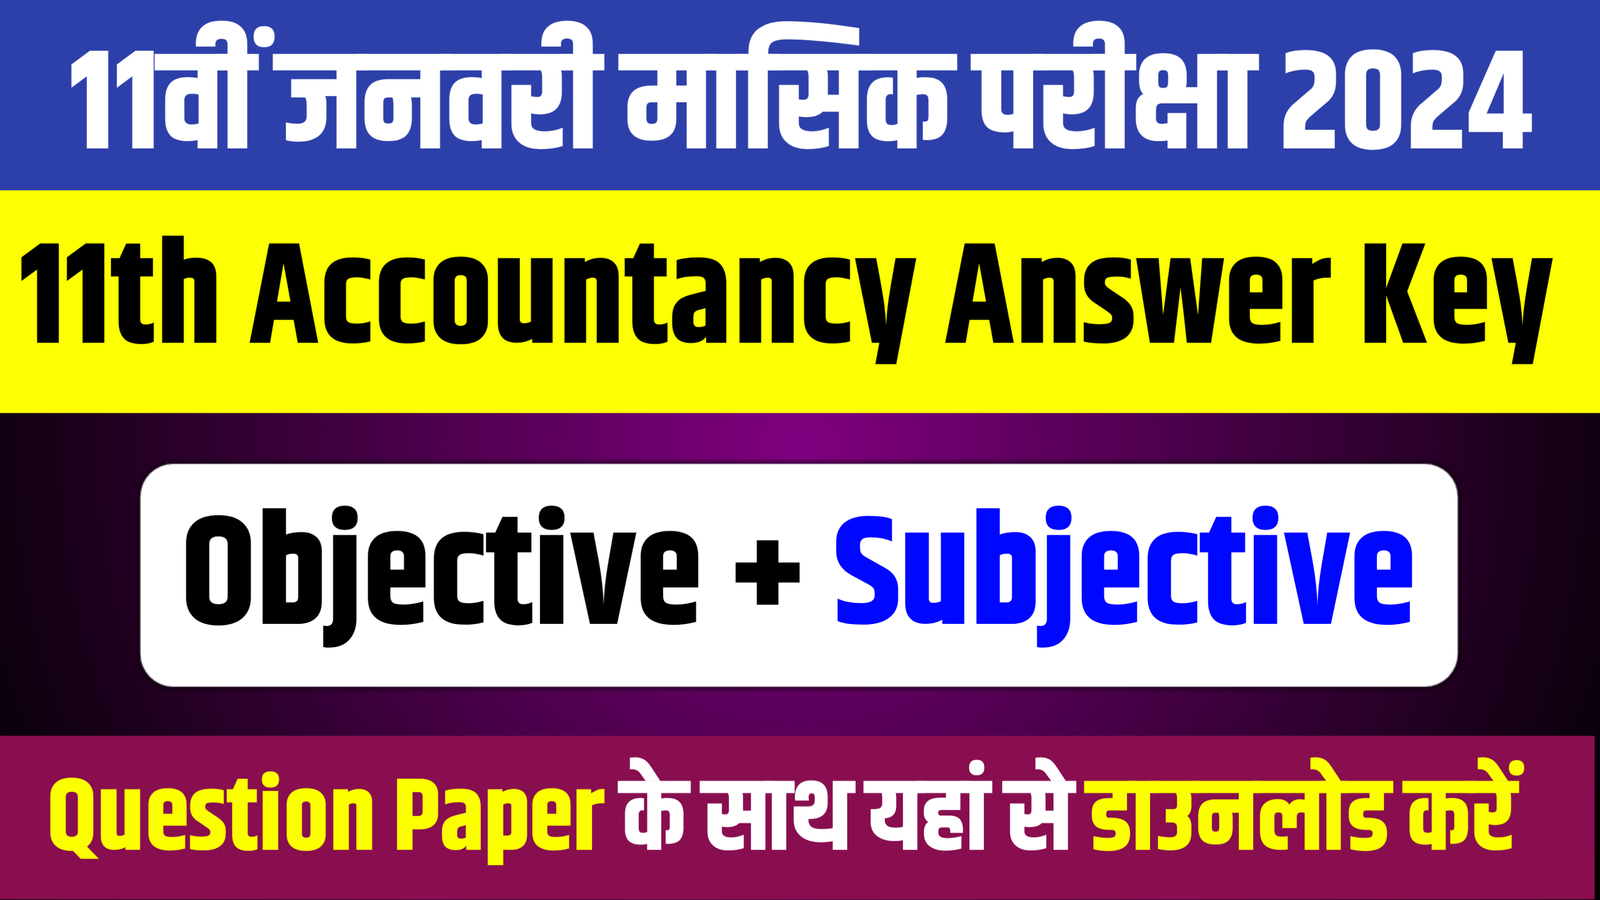 Bihar Board 11th Accountancy Objective Subjective: